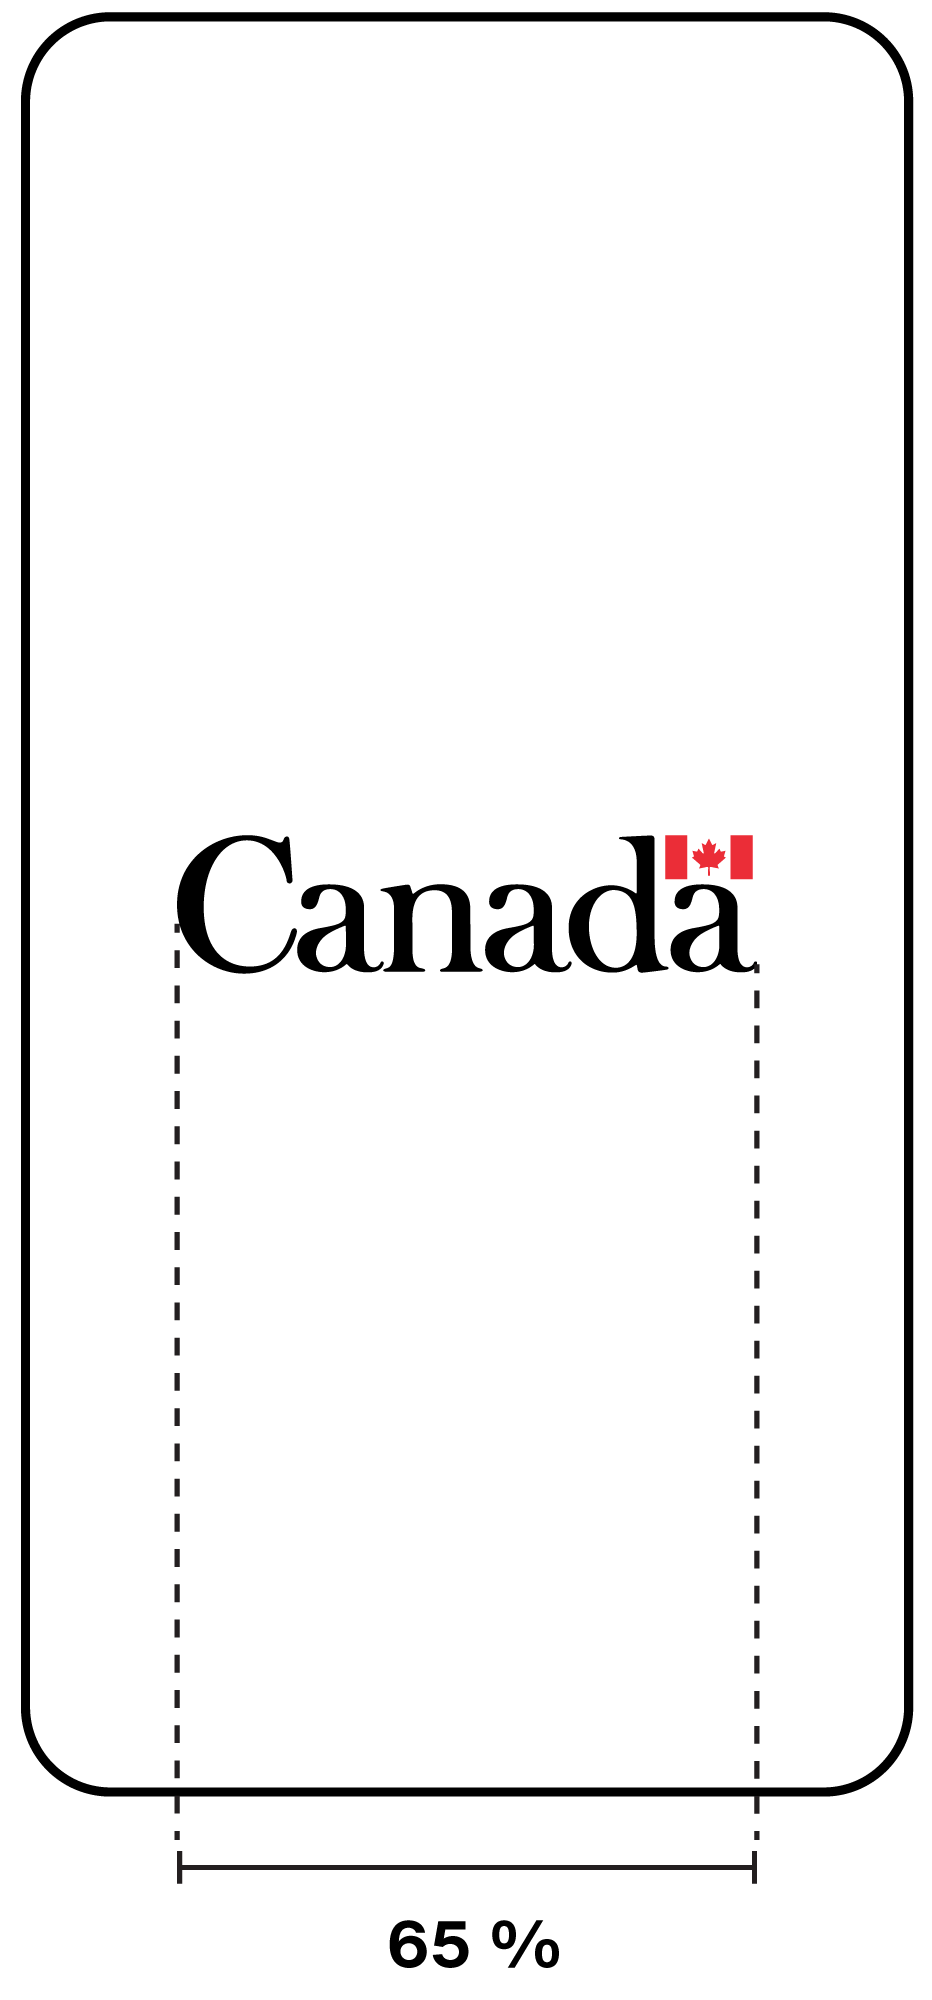 Exemple d’un écran de démarrage contenant le mot-symbole « Canada » au centre. Le mot symbole occupe 65 % de la largeur de l’écran de démarrage lorsque le téléphone intelligent est en mode « portrait ».